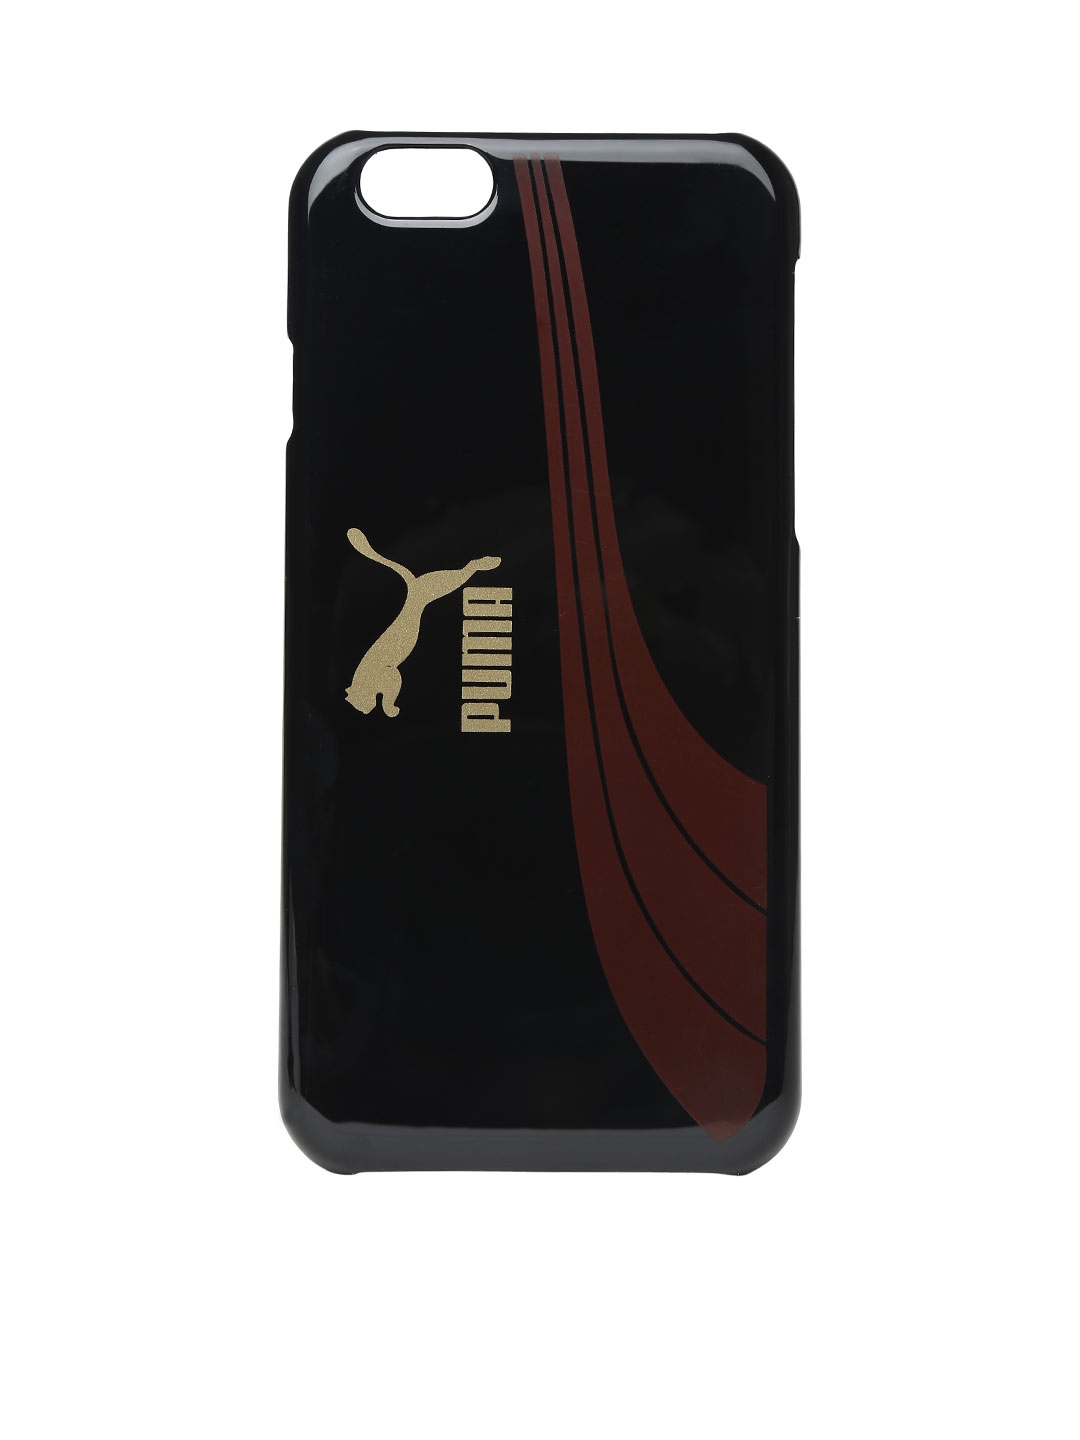 puma phone case